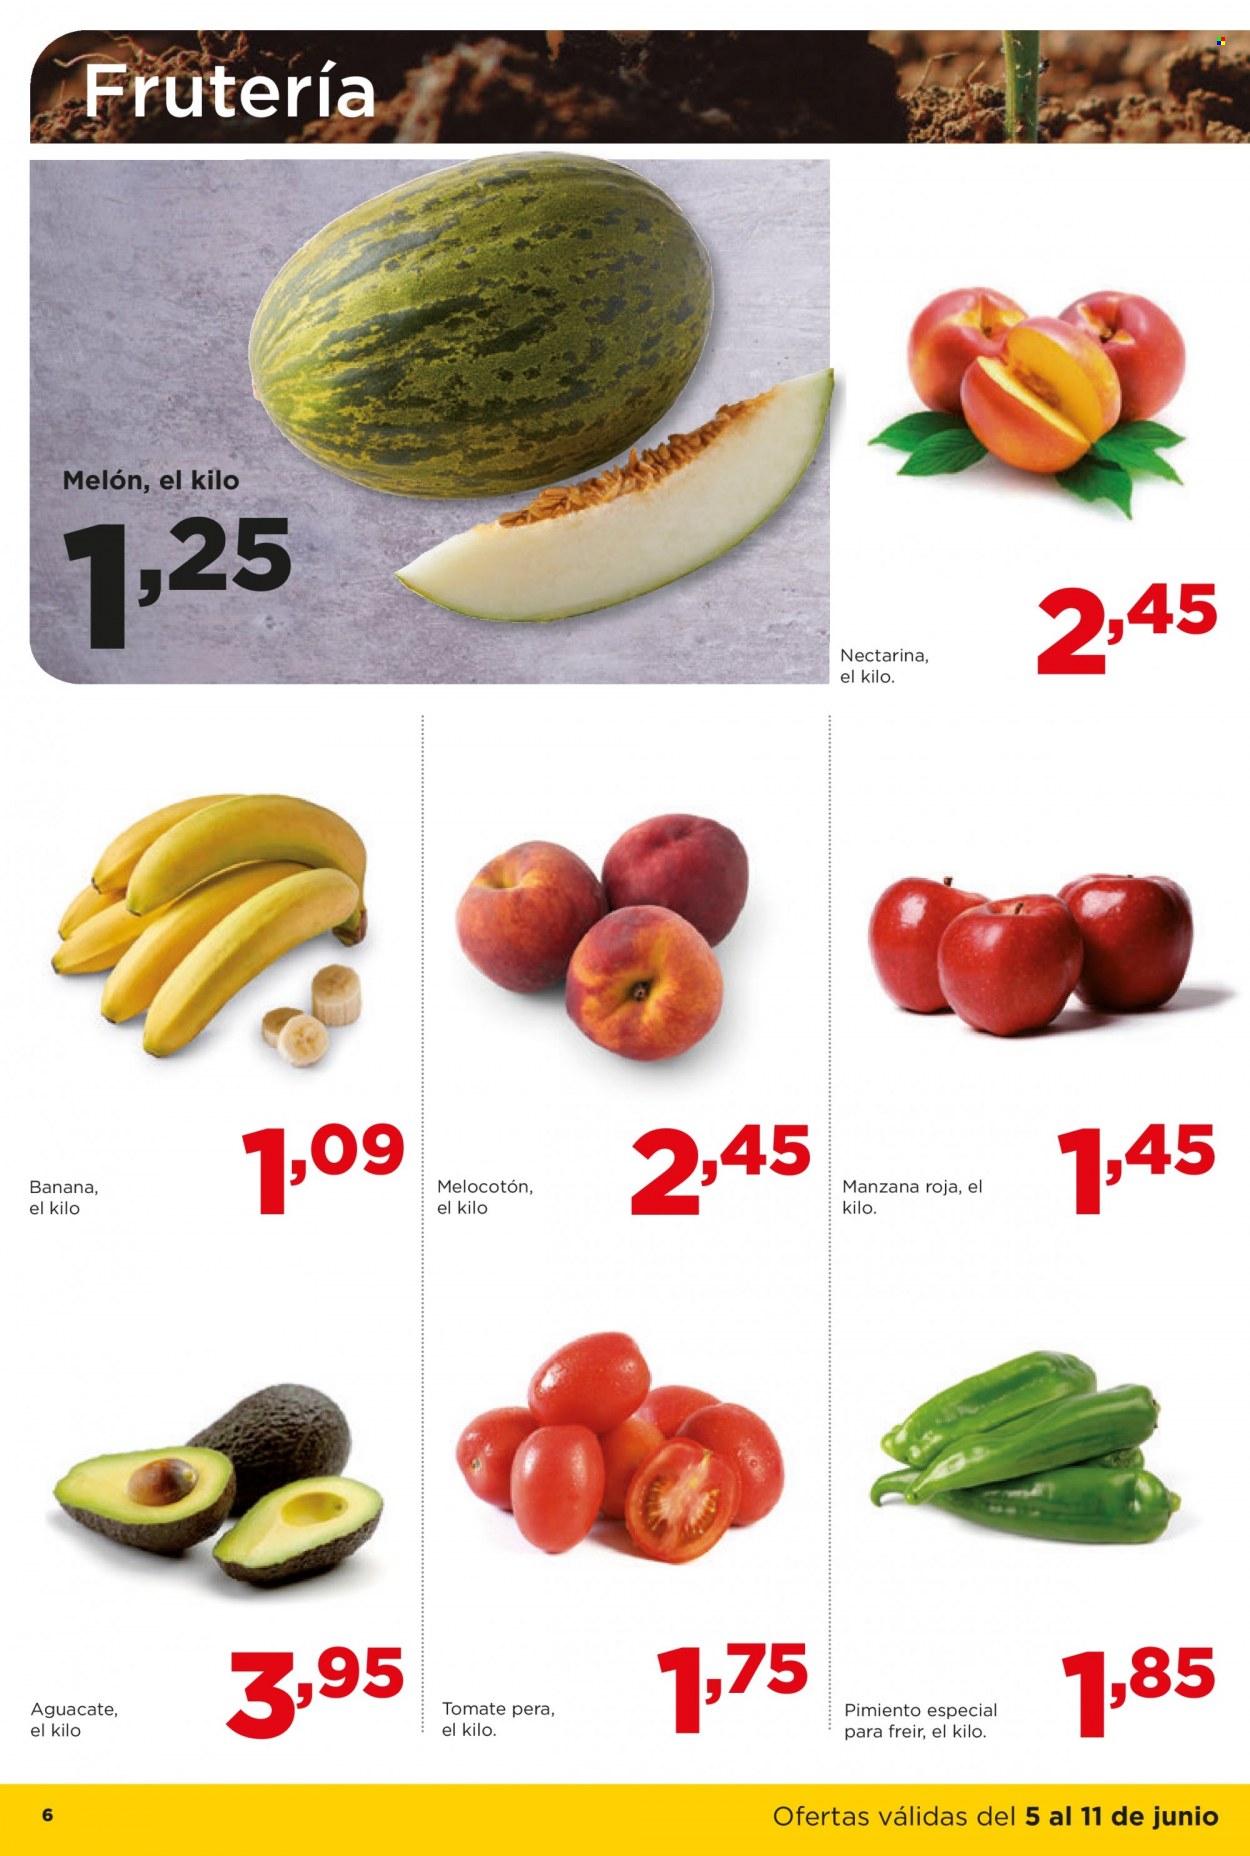 thumbnail - Folleto actual Alimerka - 05/06/23 - 11/06/23 - Ventas - nectarina, manzanas, aguacate, melón, banana, melocotón, tomate, pimiento. Página 6.